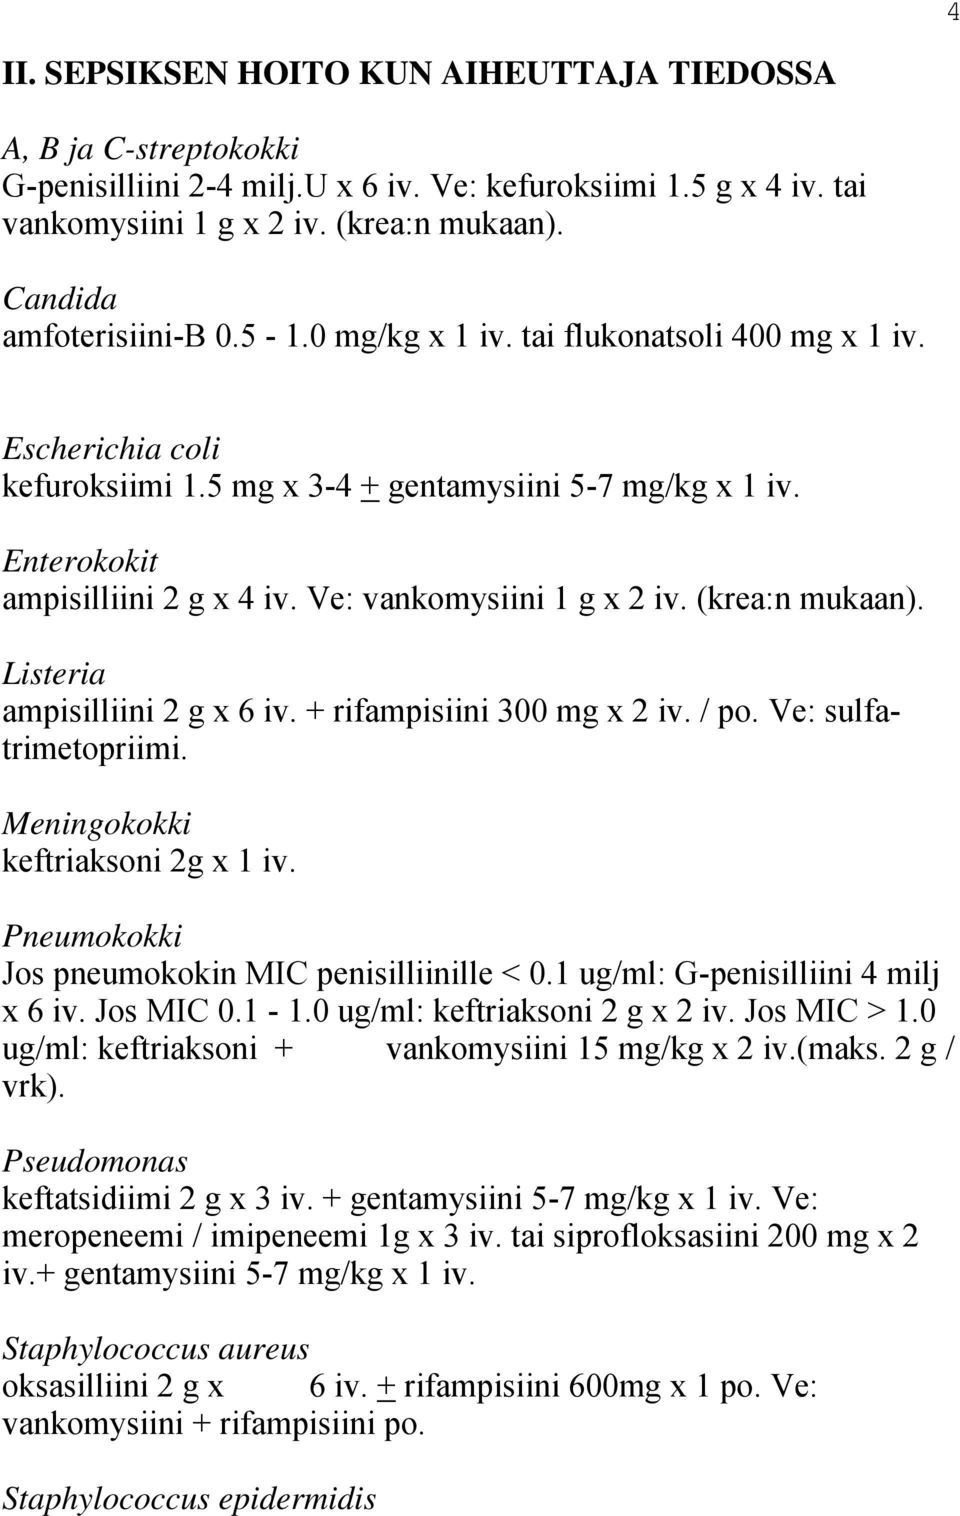 Ve: vankomysiini 1 g x 2 iv. (krea:n mukaan). Listeria ampisilliini 2 g x 6 iv. + rifampisiini 300 mg x 2 iv. / po. Ve: sulfatrimetopriimi. Meningokokki keftriaksoni 2g x 1 iv.